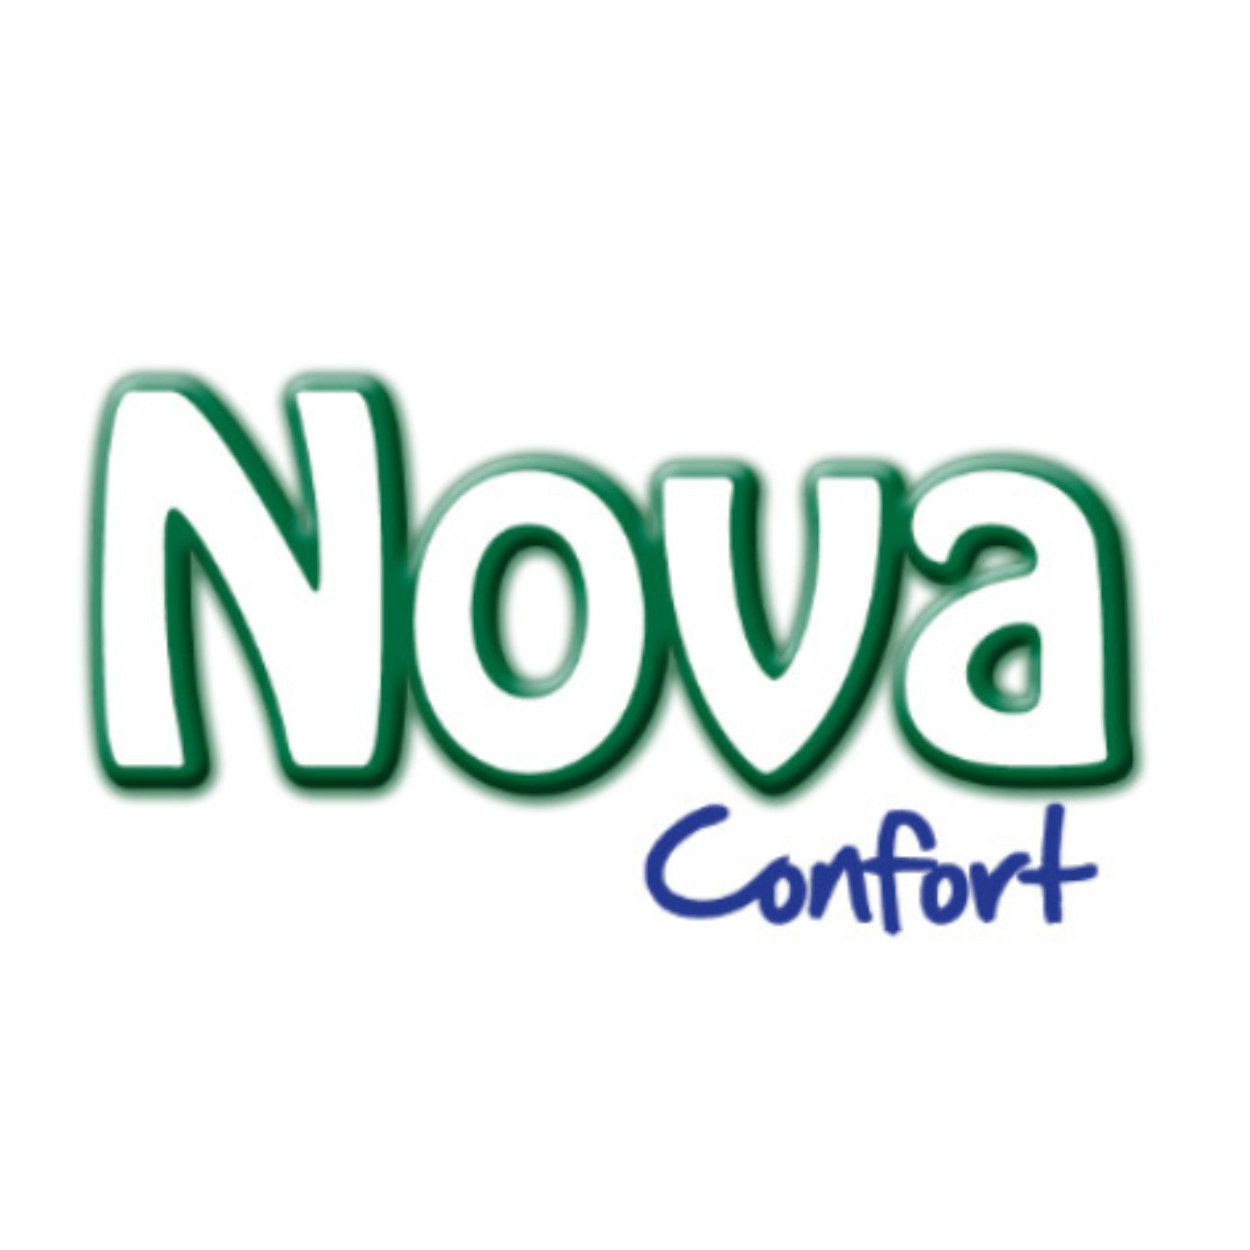 Nova Confort